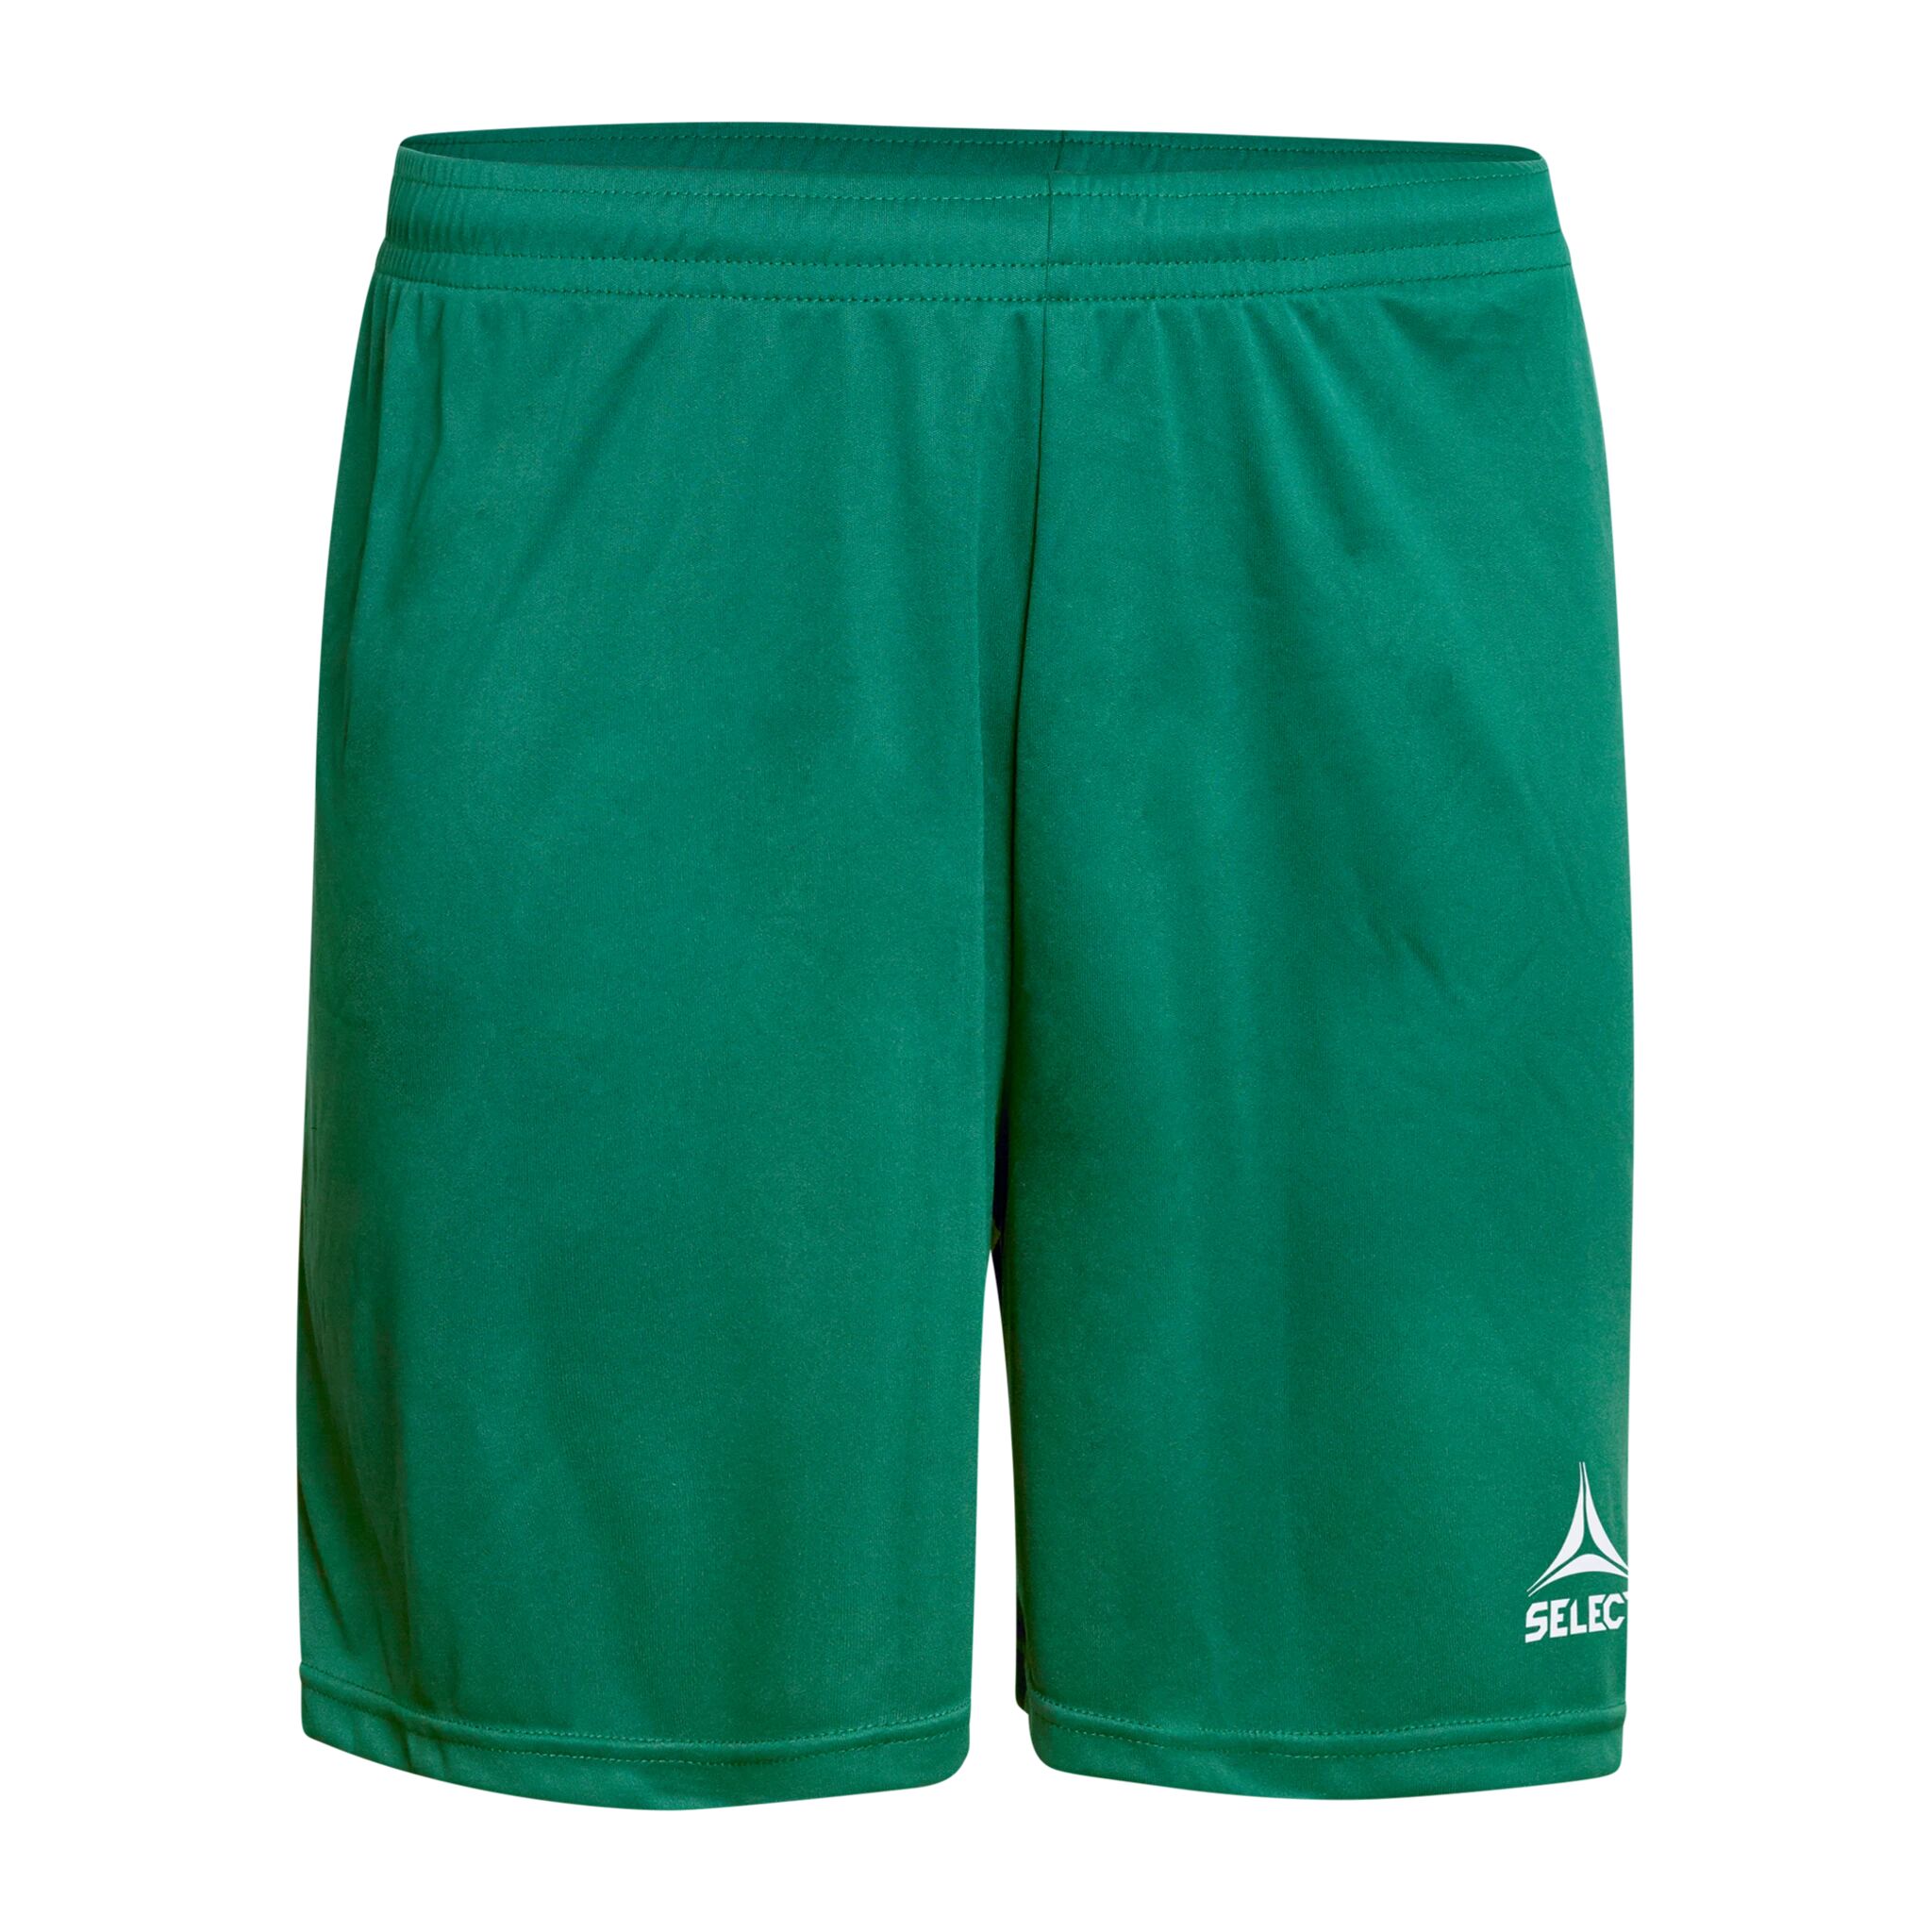 Select Player shorts Pisa, shorts senior 140 Green